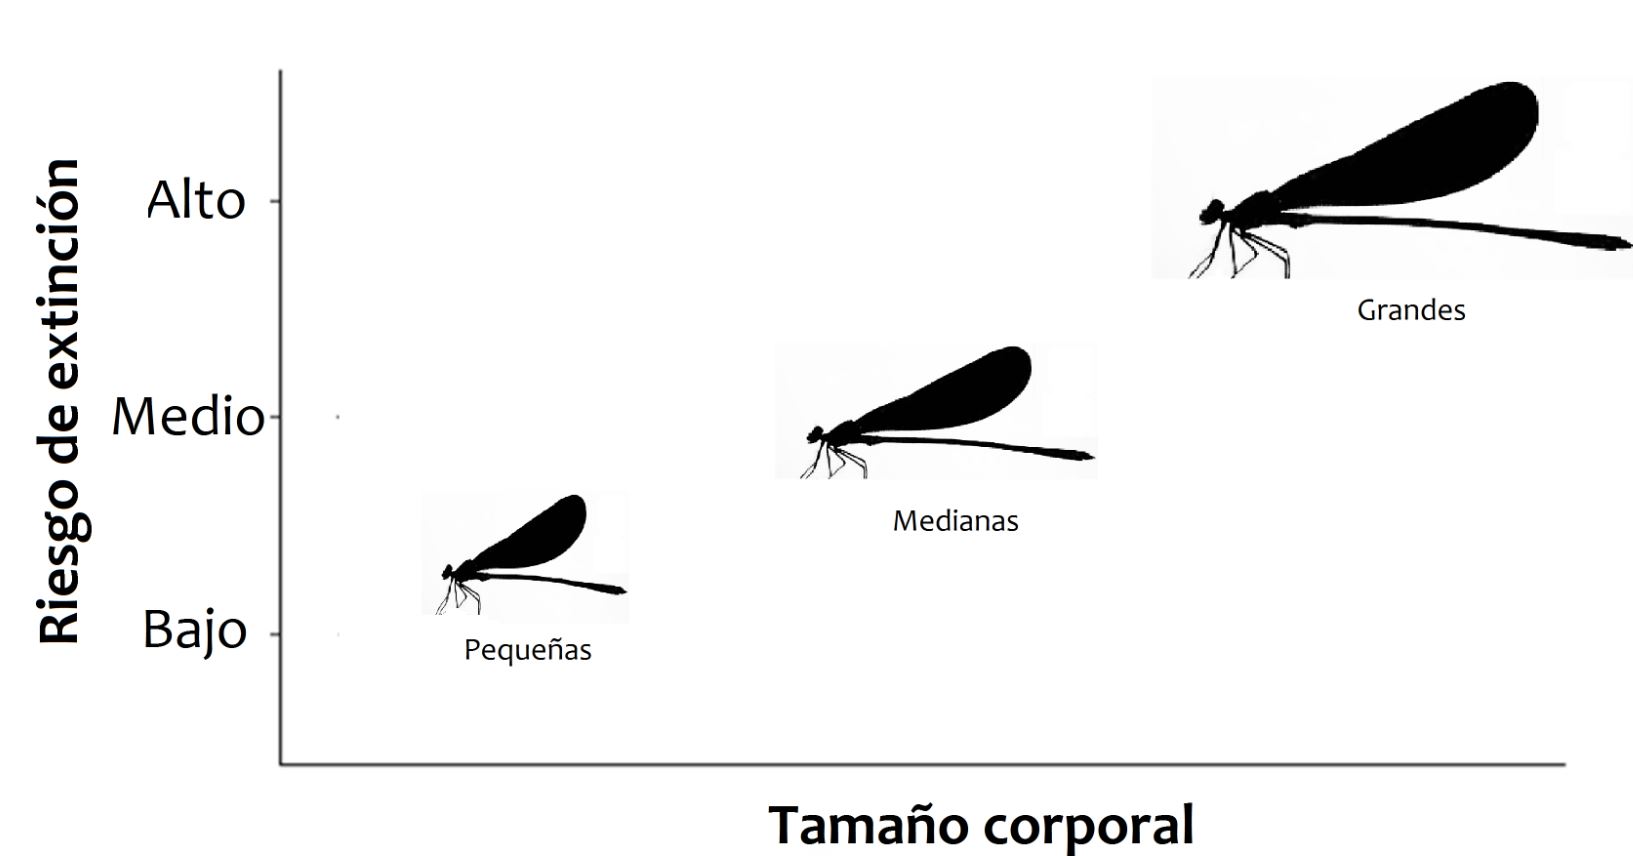 Figura 2. Relación entre riesgo de extinción y tamaño corporal encontrada en especies de caballitos del diablo.